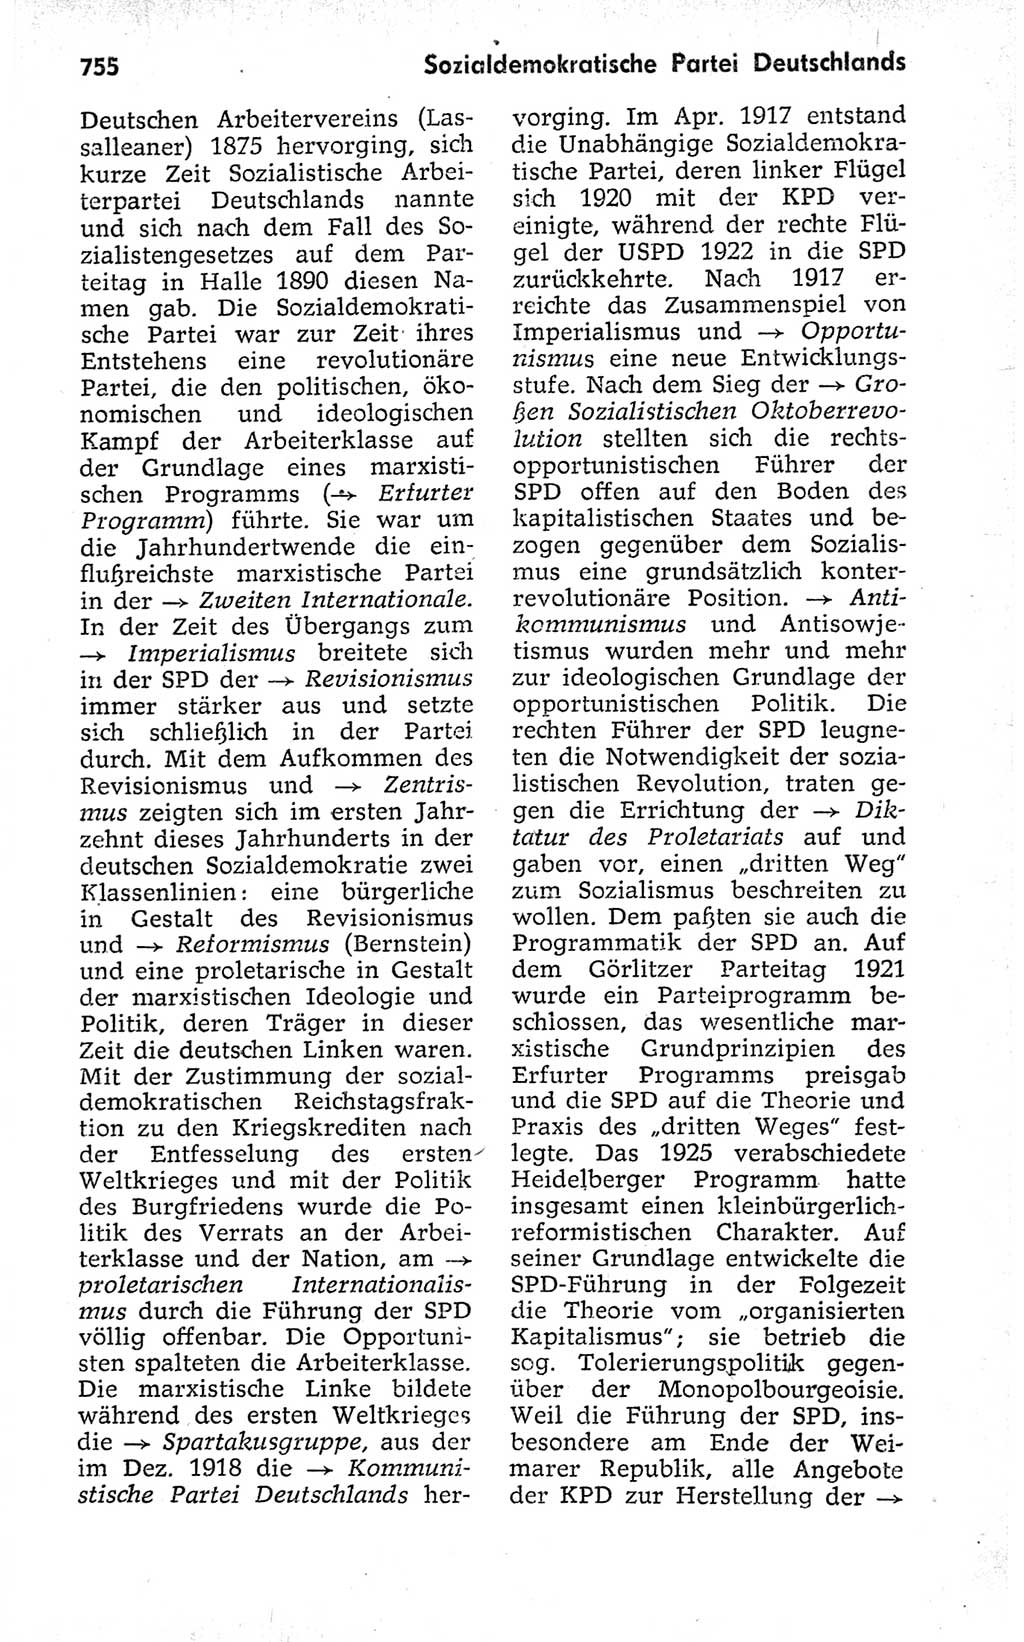 Kleines politisches Wörterbuch [Deutsche Demokratische Republik (DDR)] 1973, Seite 755 (Kl. pol. Wb. DDR 1973, S. 755)